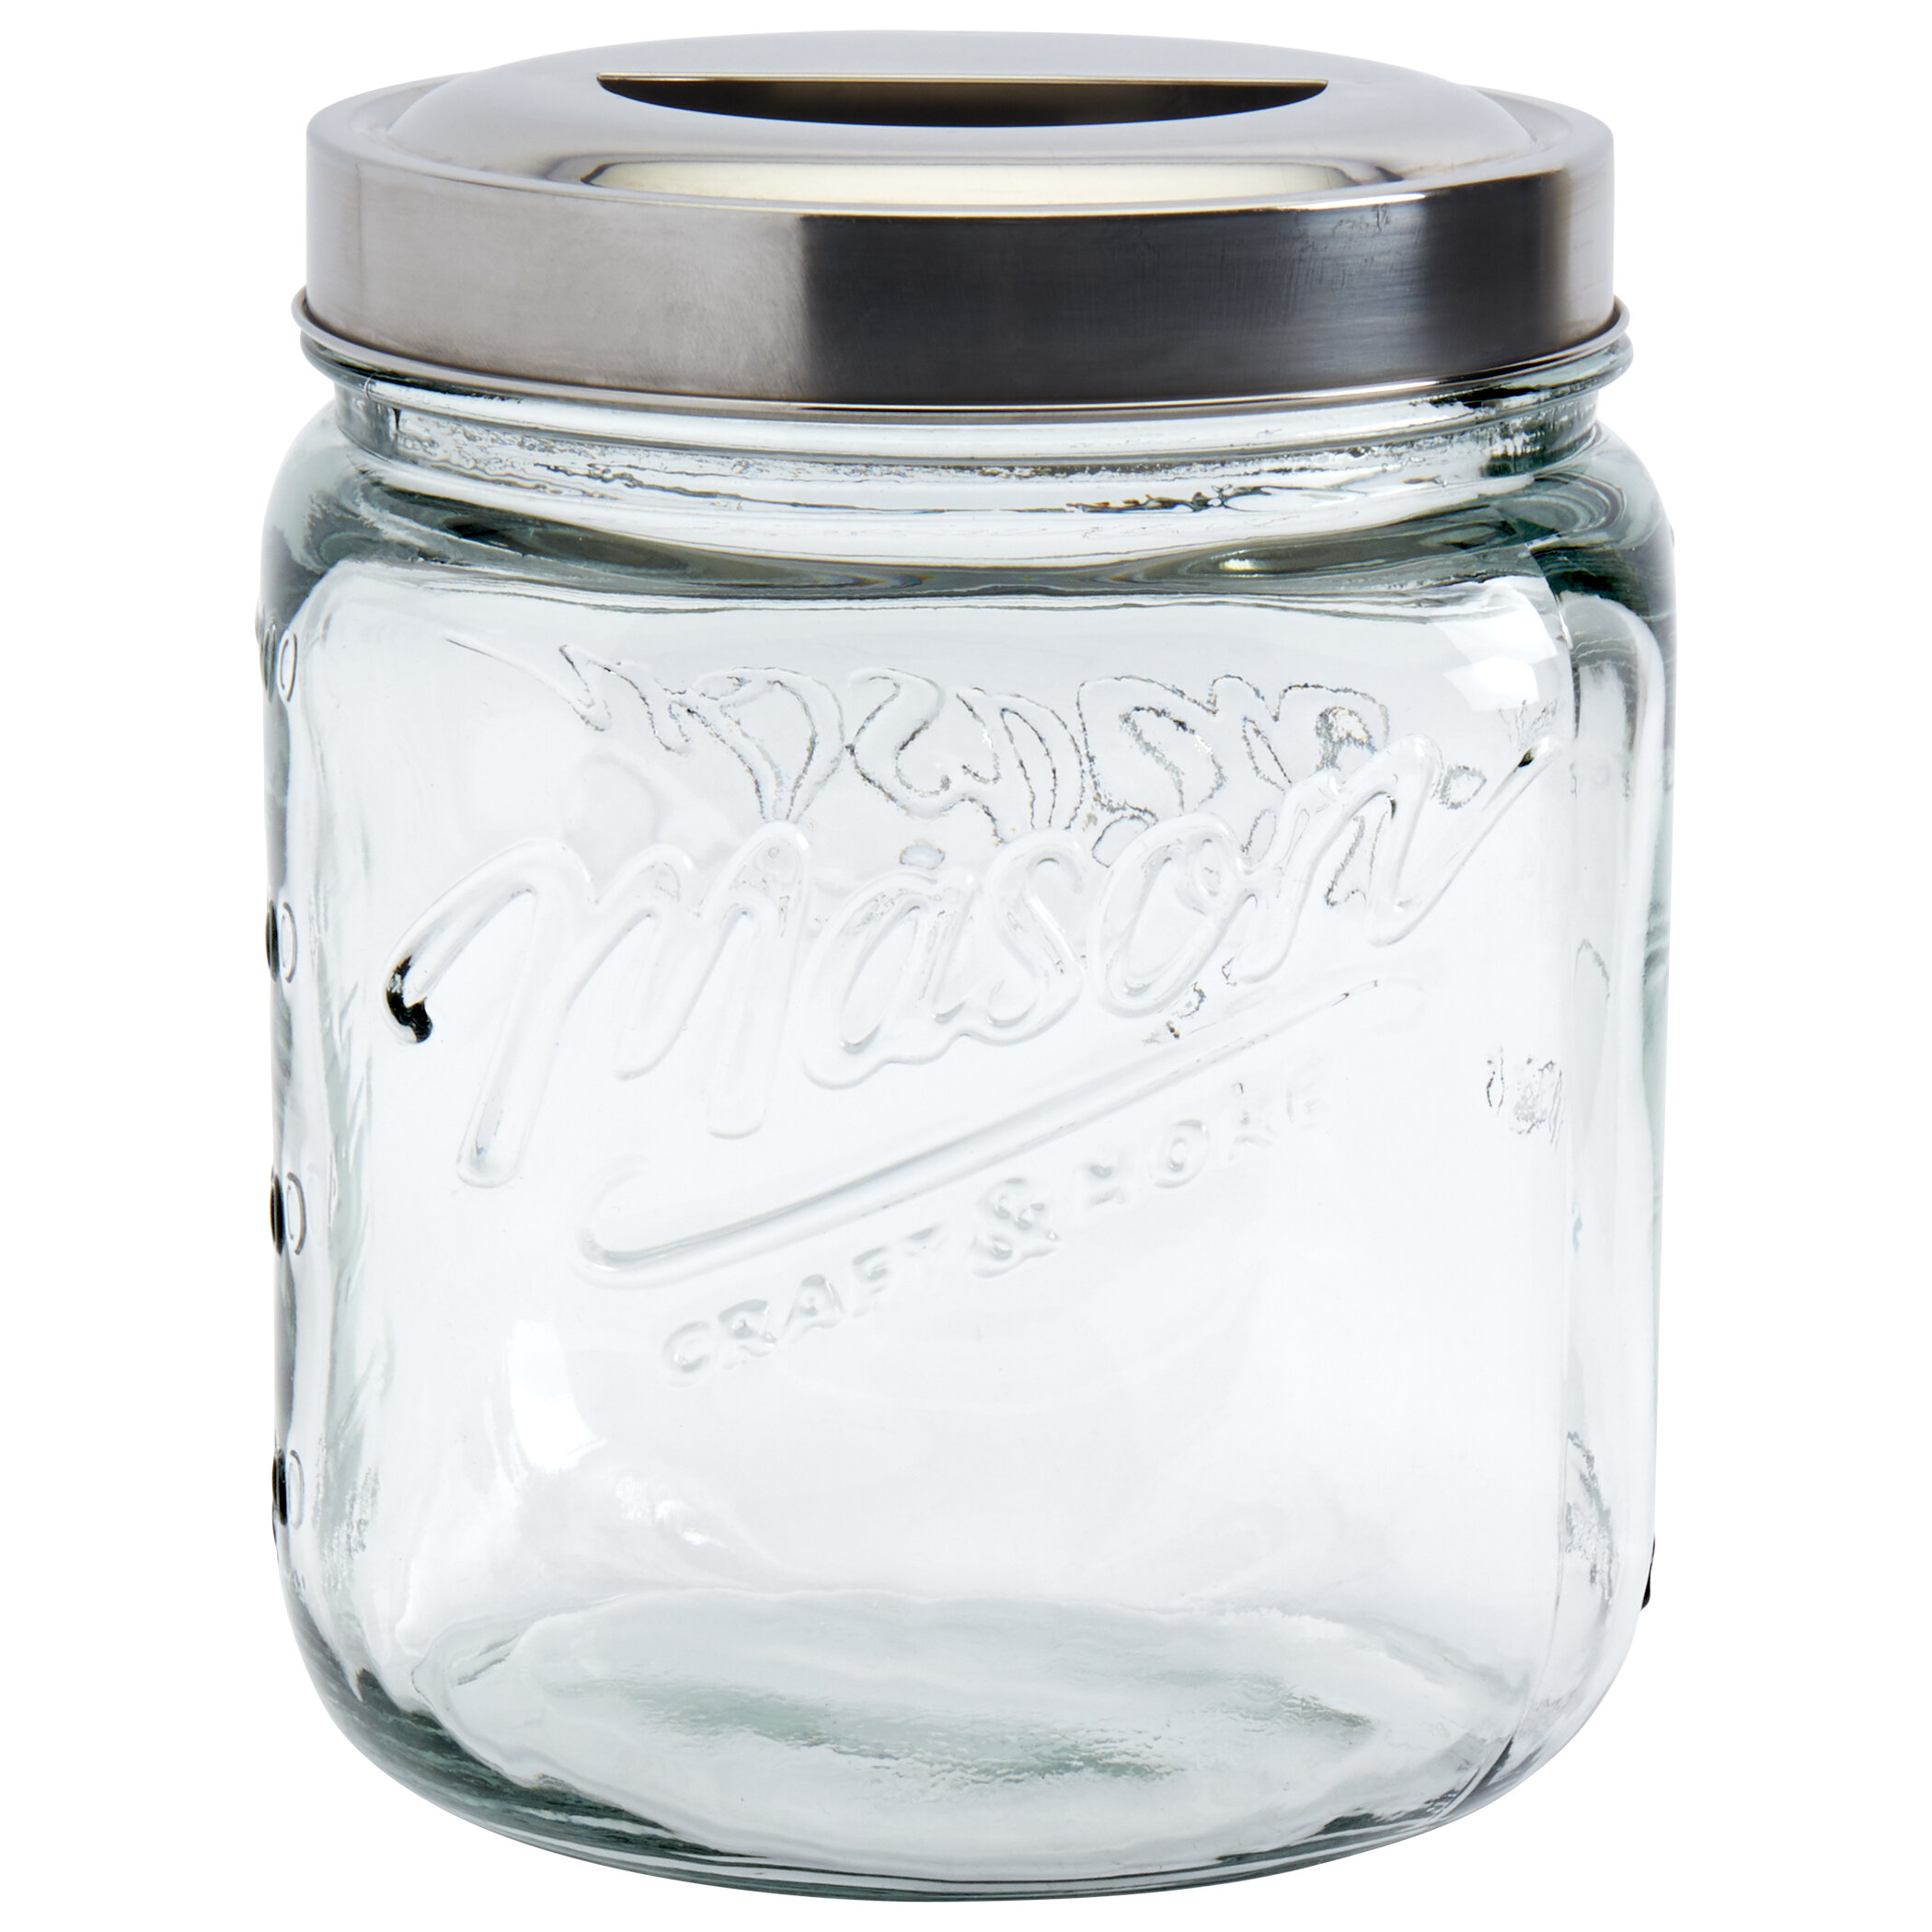 https://assets.wfcdn.com/im/47136297/compr-r85/1305/130521717/vintage-storage-jars-canning-jar.jpg